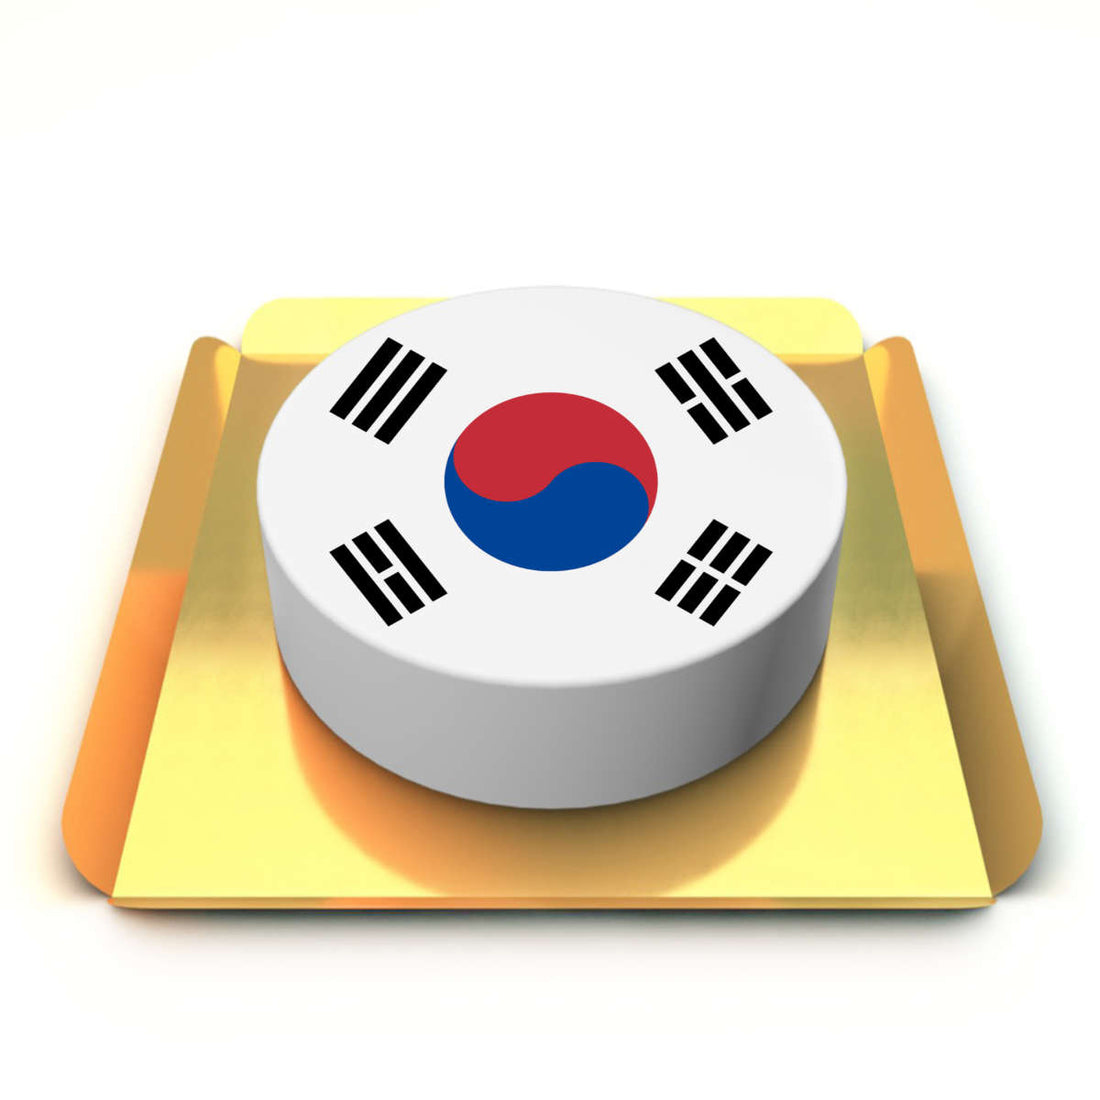 Güney Kore Bayrağı Kutlama Pastası